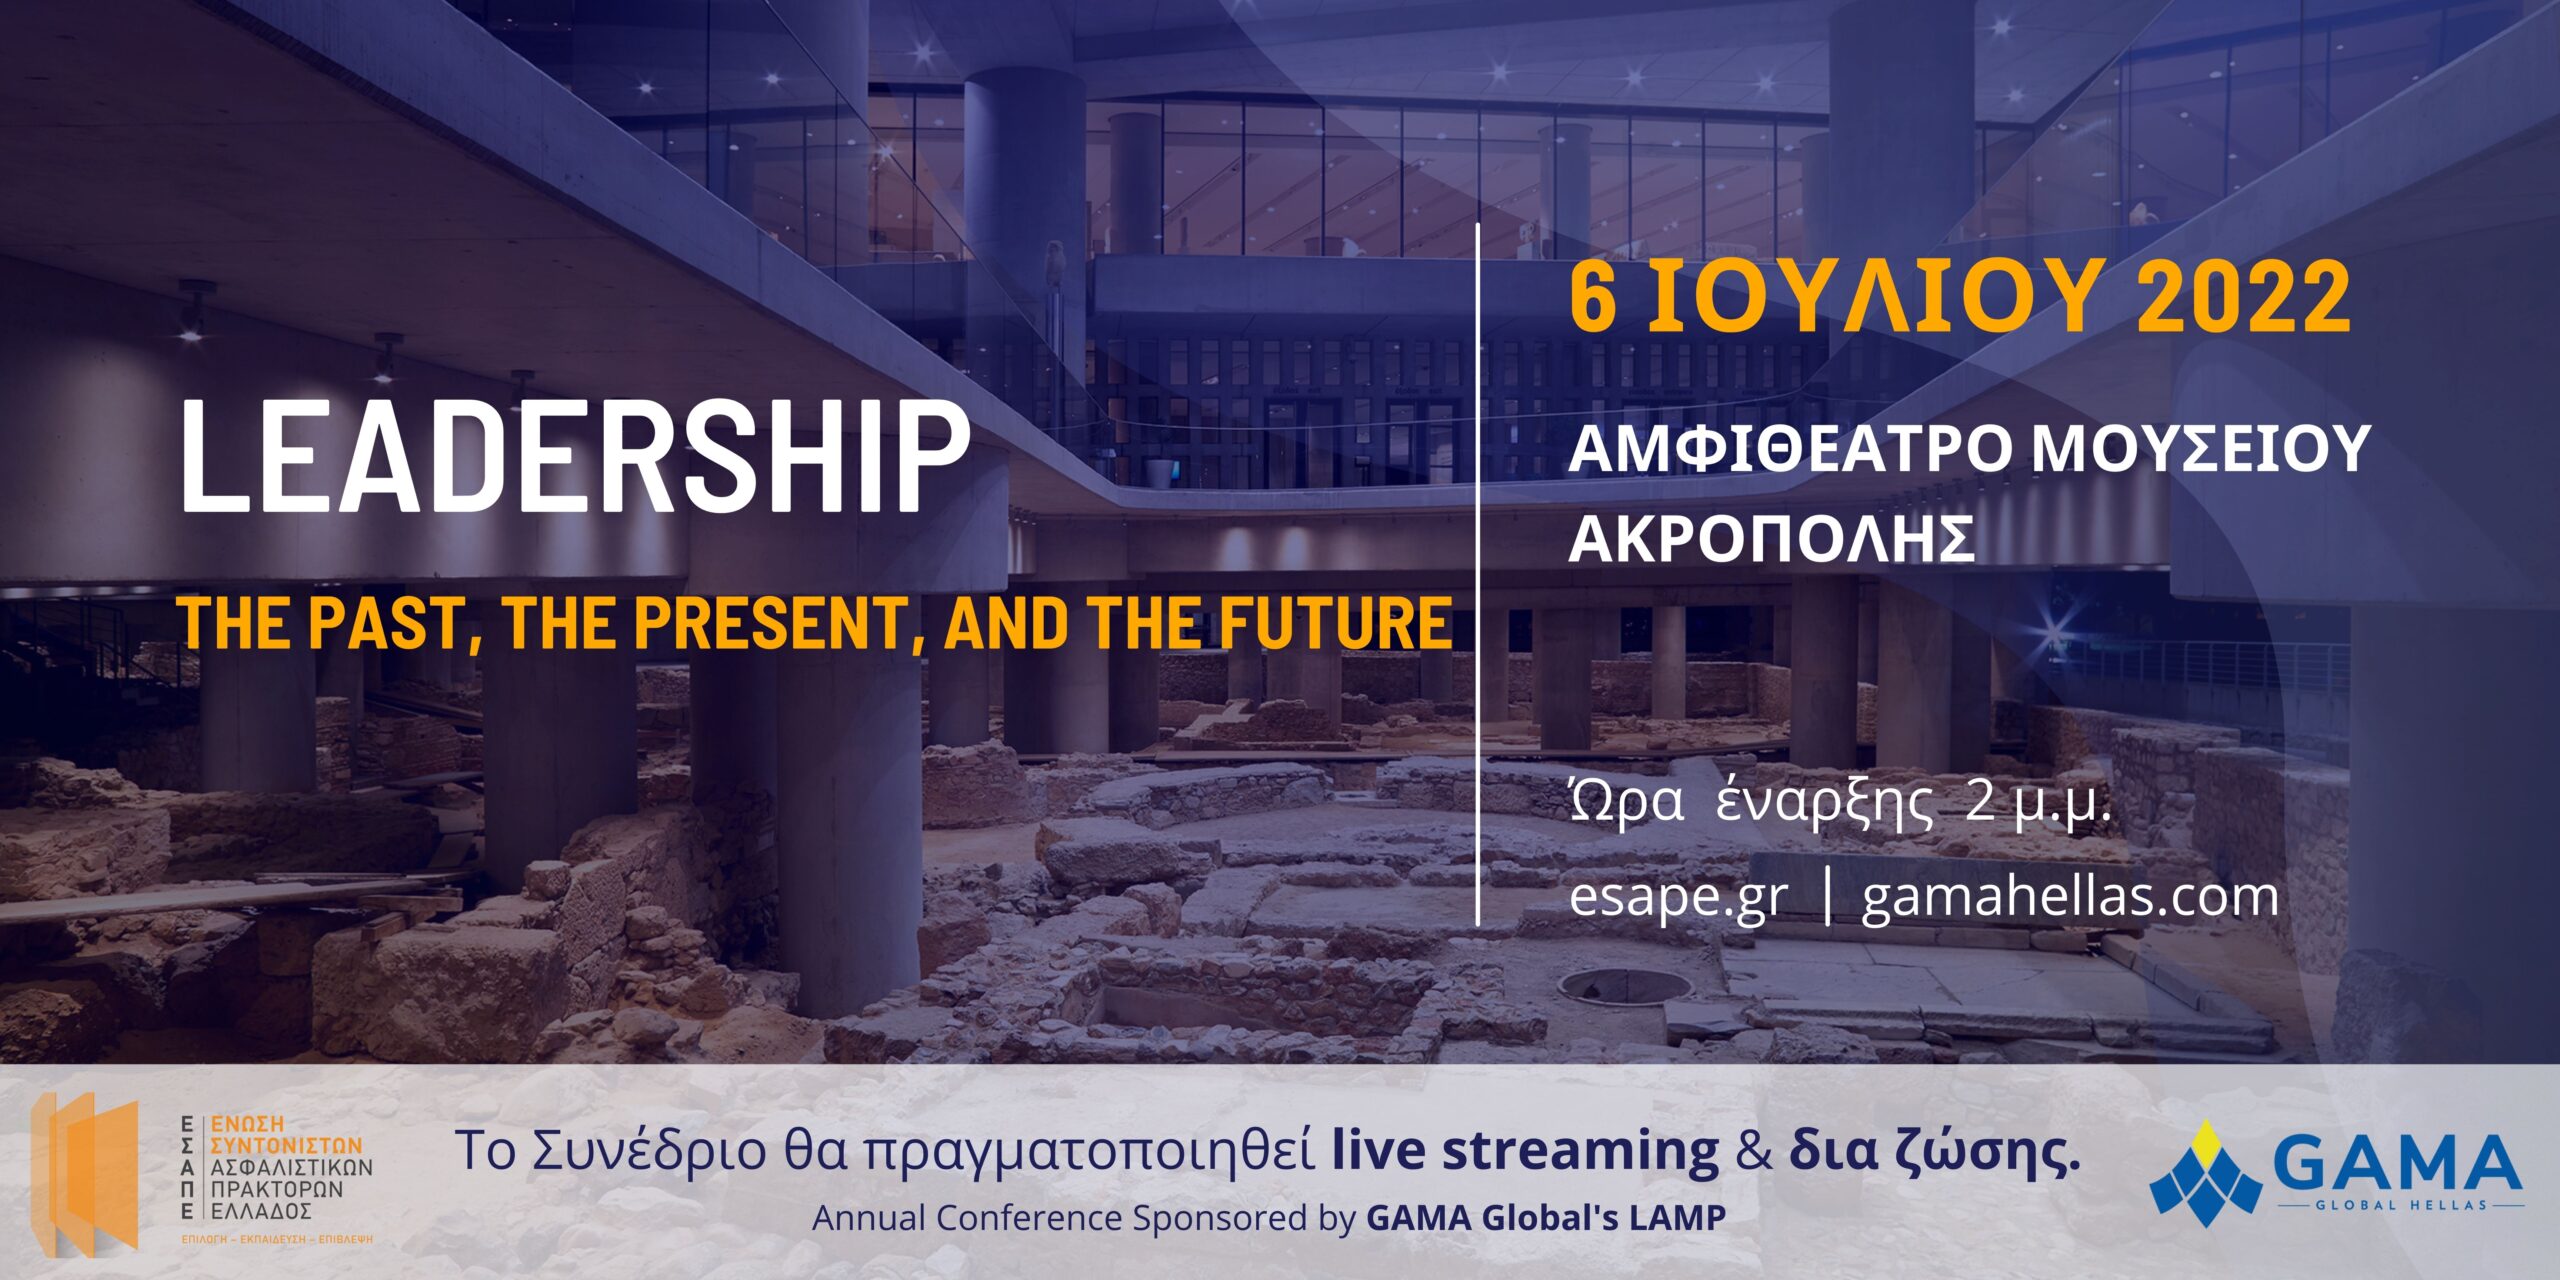 ΕΣΑΠΕ & GAMA Global Hellas: Εκπαιδευτικό συνέδριο στις 6/7/2022